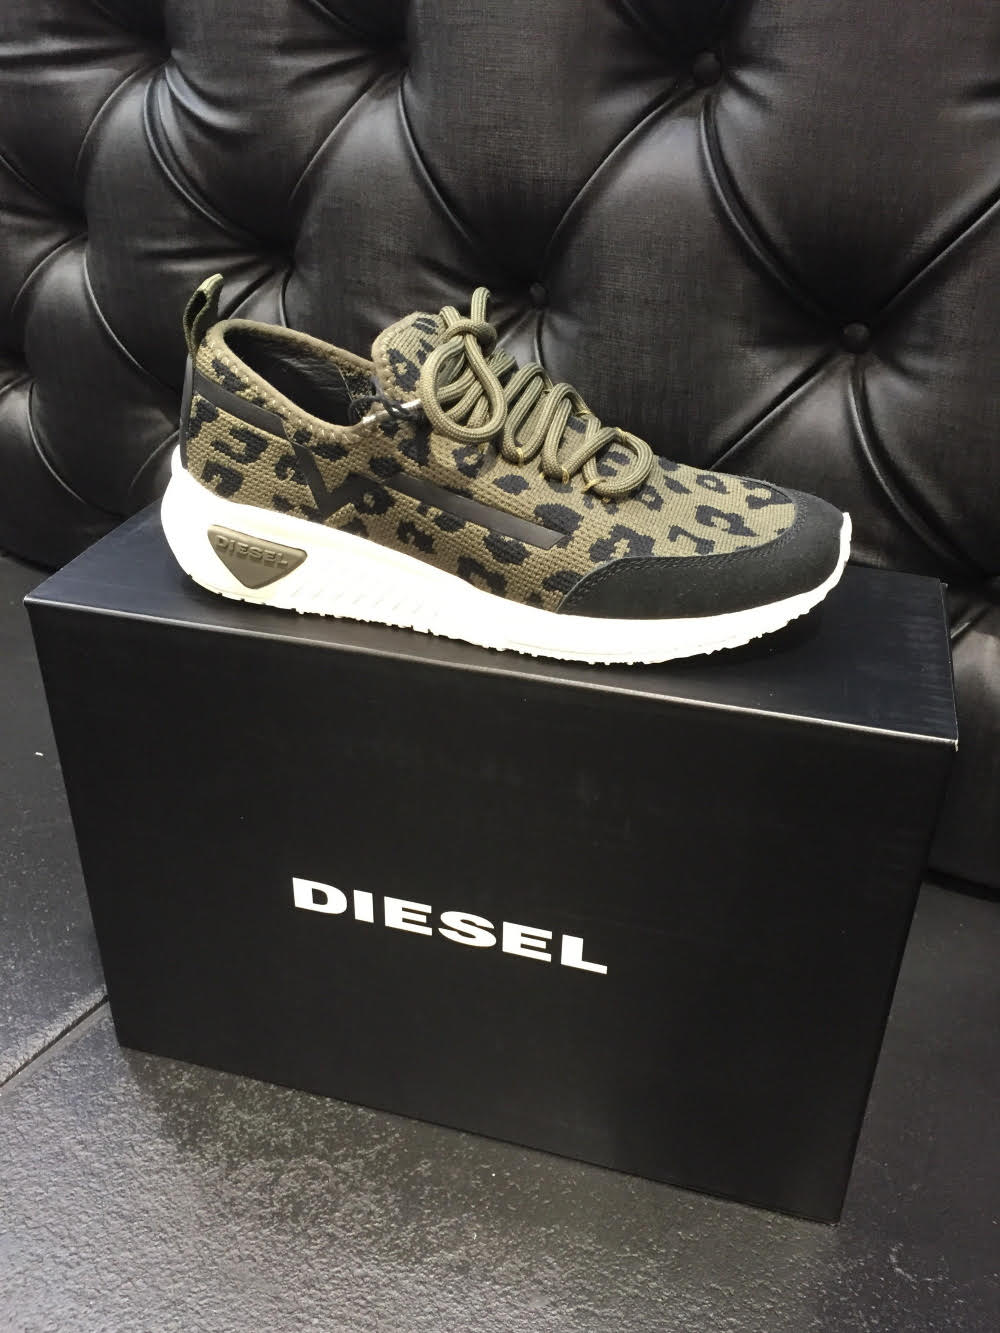 Diesel Shoes Camo Shoe